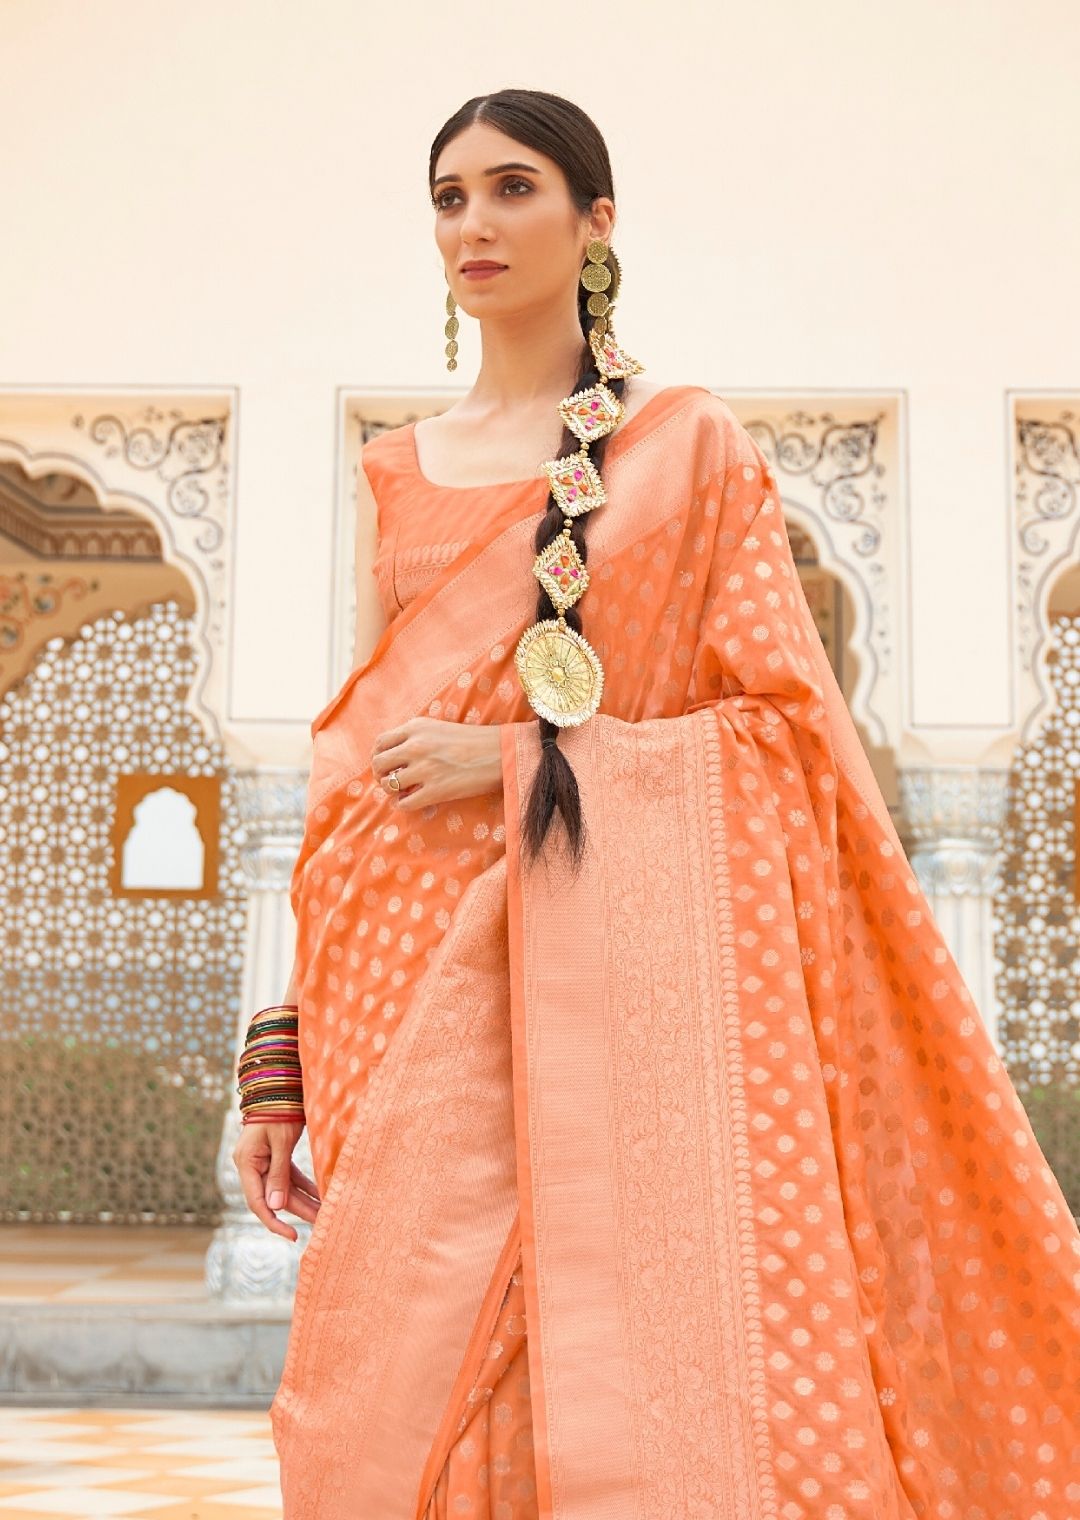 Ravishing Peach Color Floral Pattern |Banarasi Saree |Kotasilk | Saree  designs, Soft silk sarees, Saree